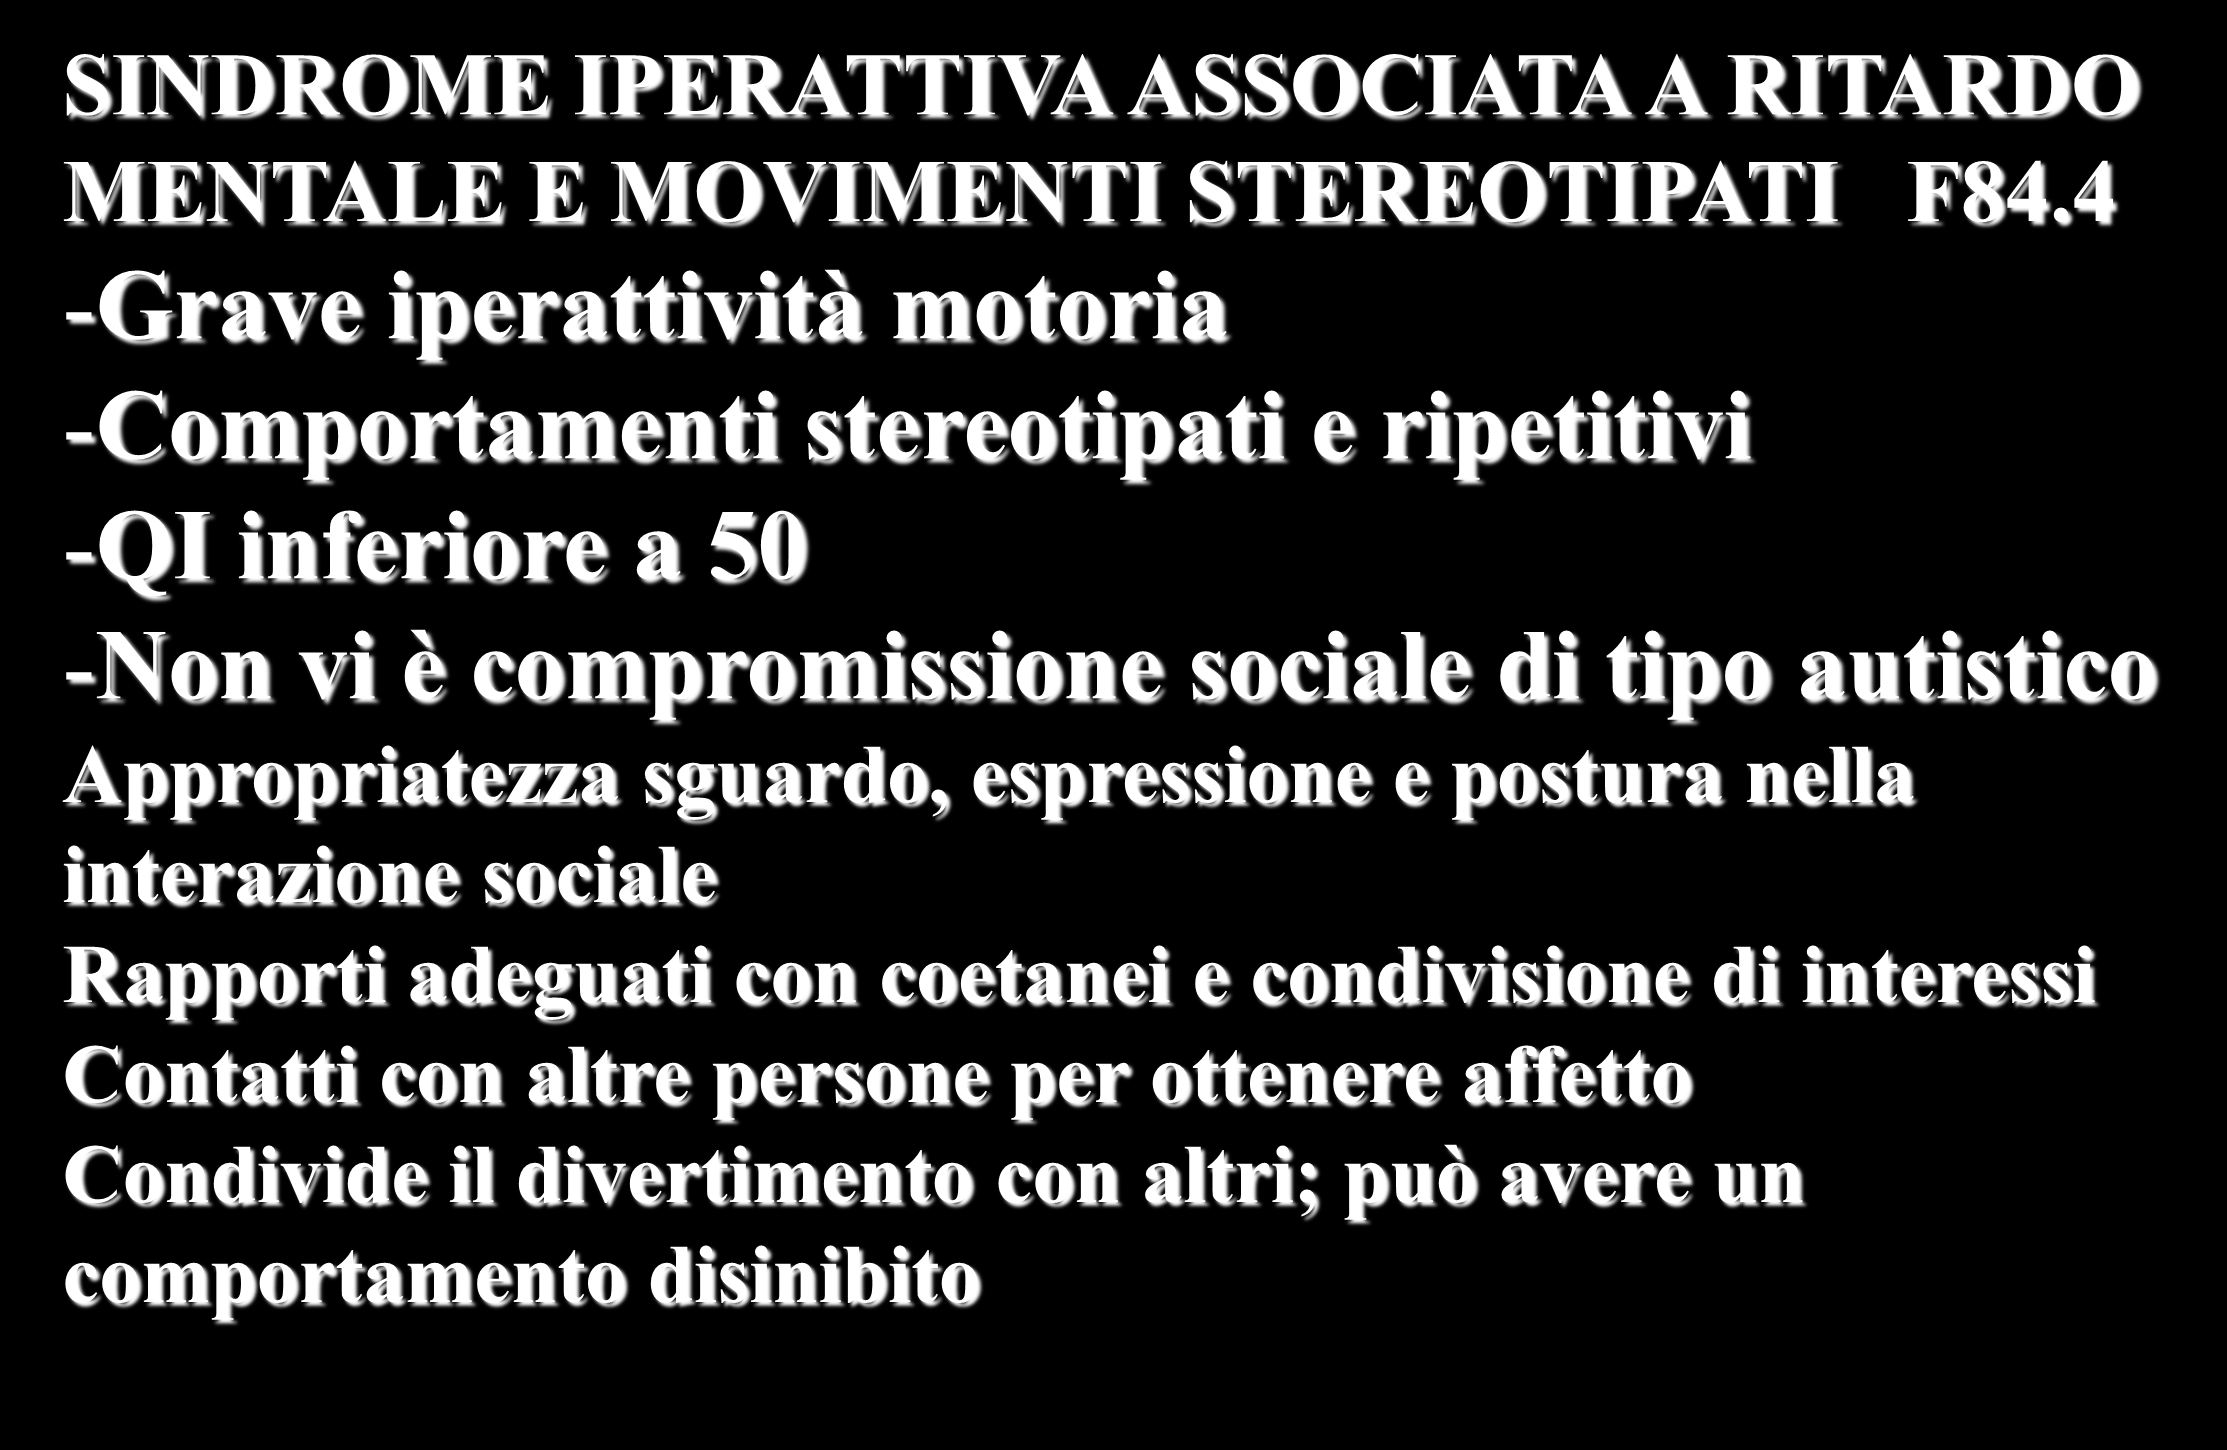 SINDROME IPERATTIVA ASSOCIATA A RITARDO MENTALE E MOVIMENTI STEREOTIPATI F84.